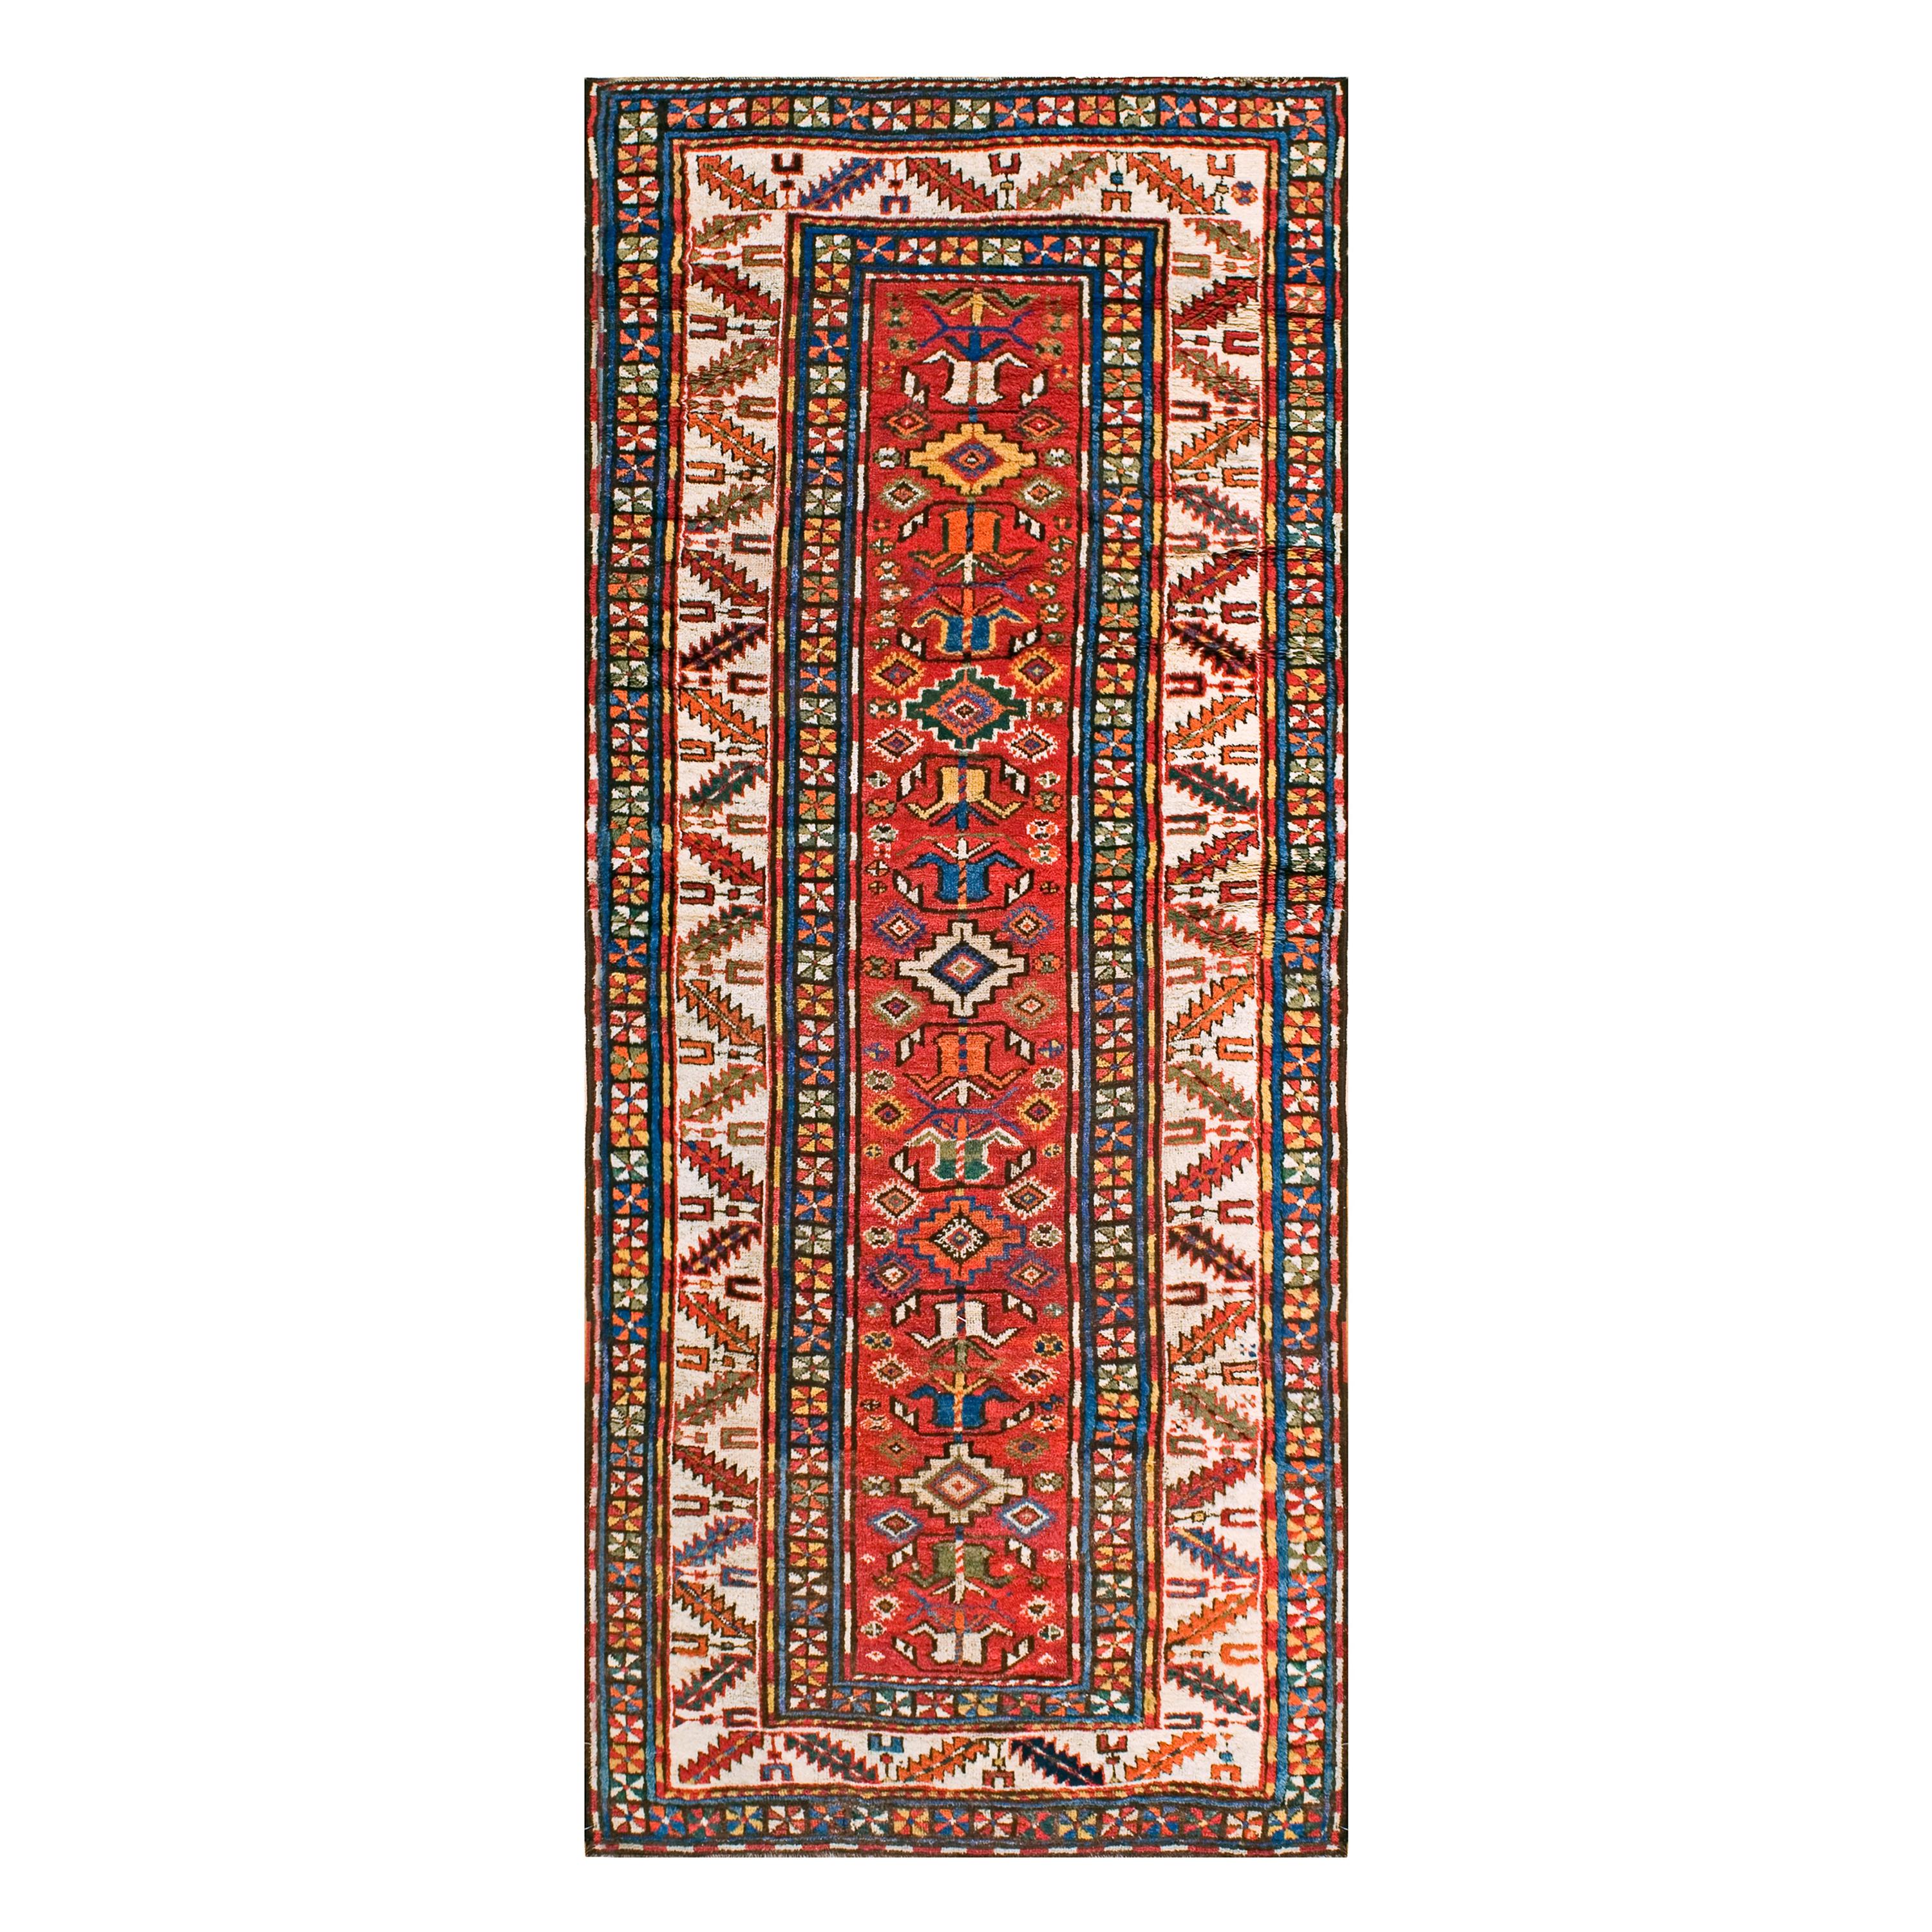 19th Century Caucasian Kazak Carpet ( 4' x 9'2" - 122 x 279 )